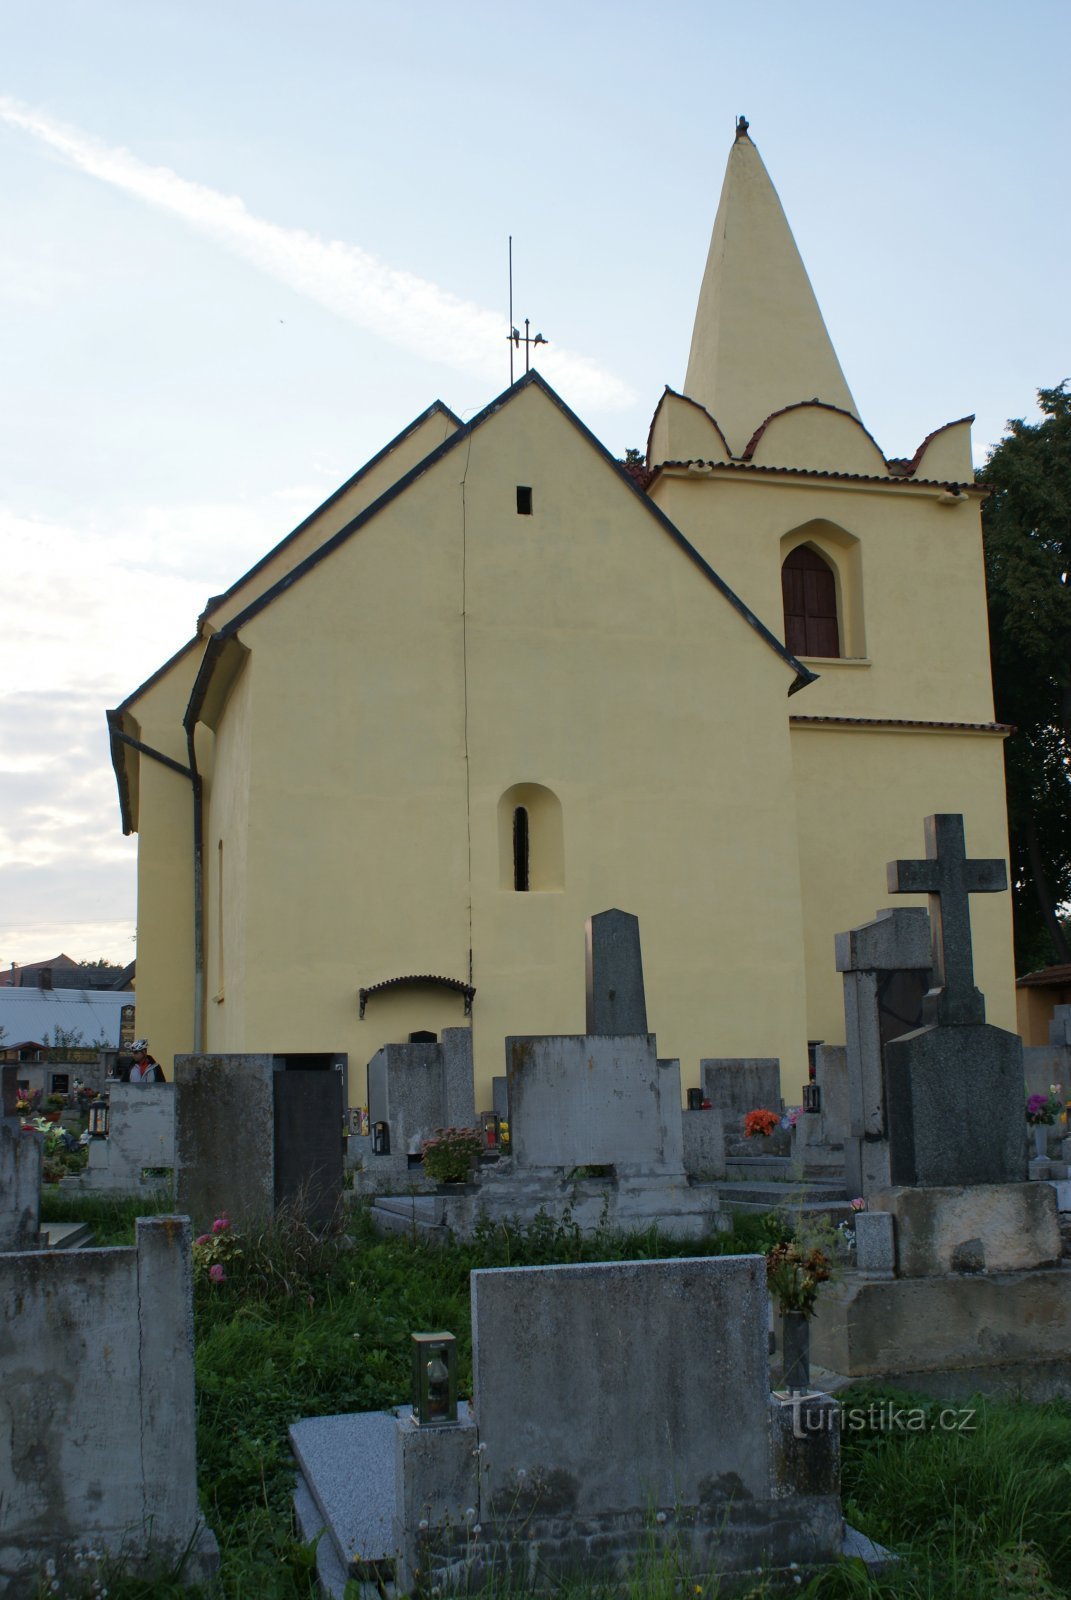 Okresaneč - église de St. Barthélemy